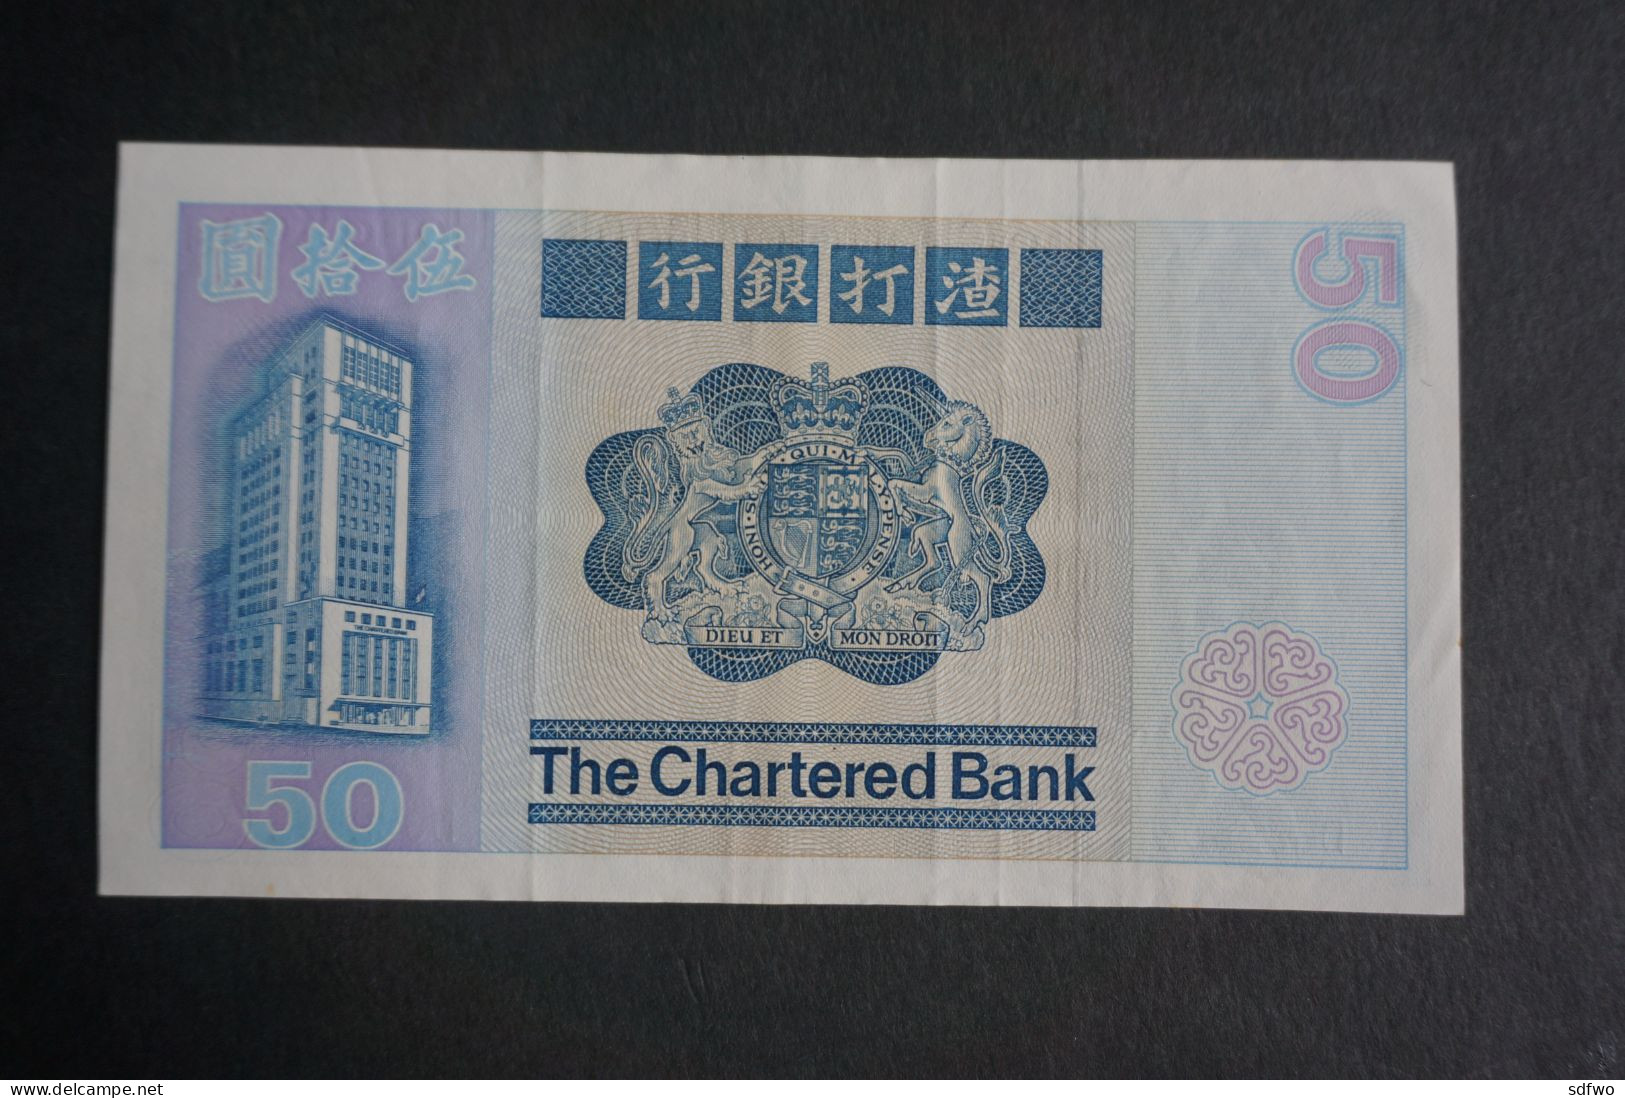 (M) 1982 HONG KONG OLD ISSUE - THE CHARTERED BANK 50 DOLLARS ($50) #D682632 - Hongkong